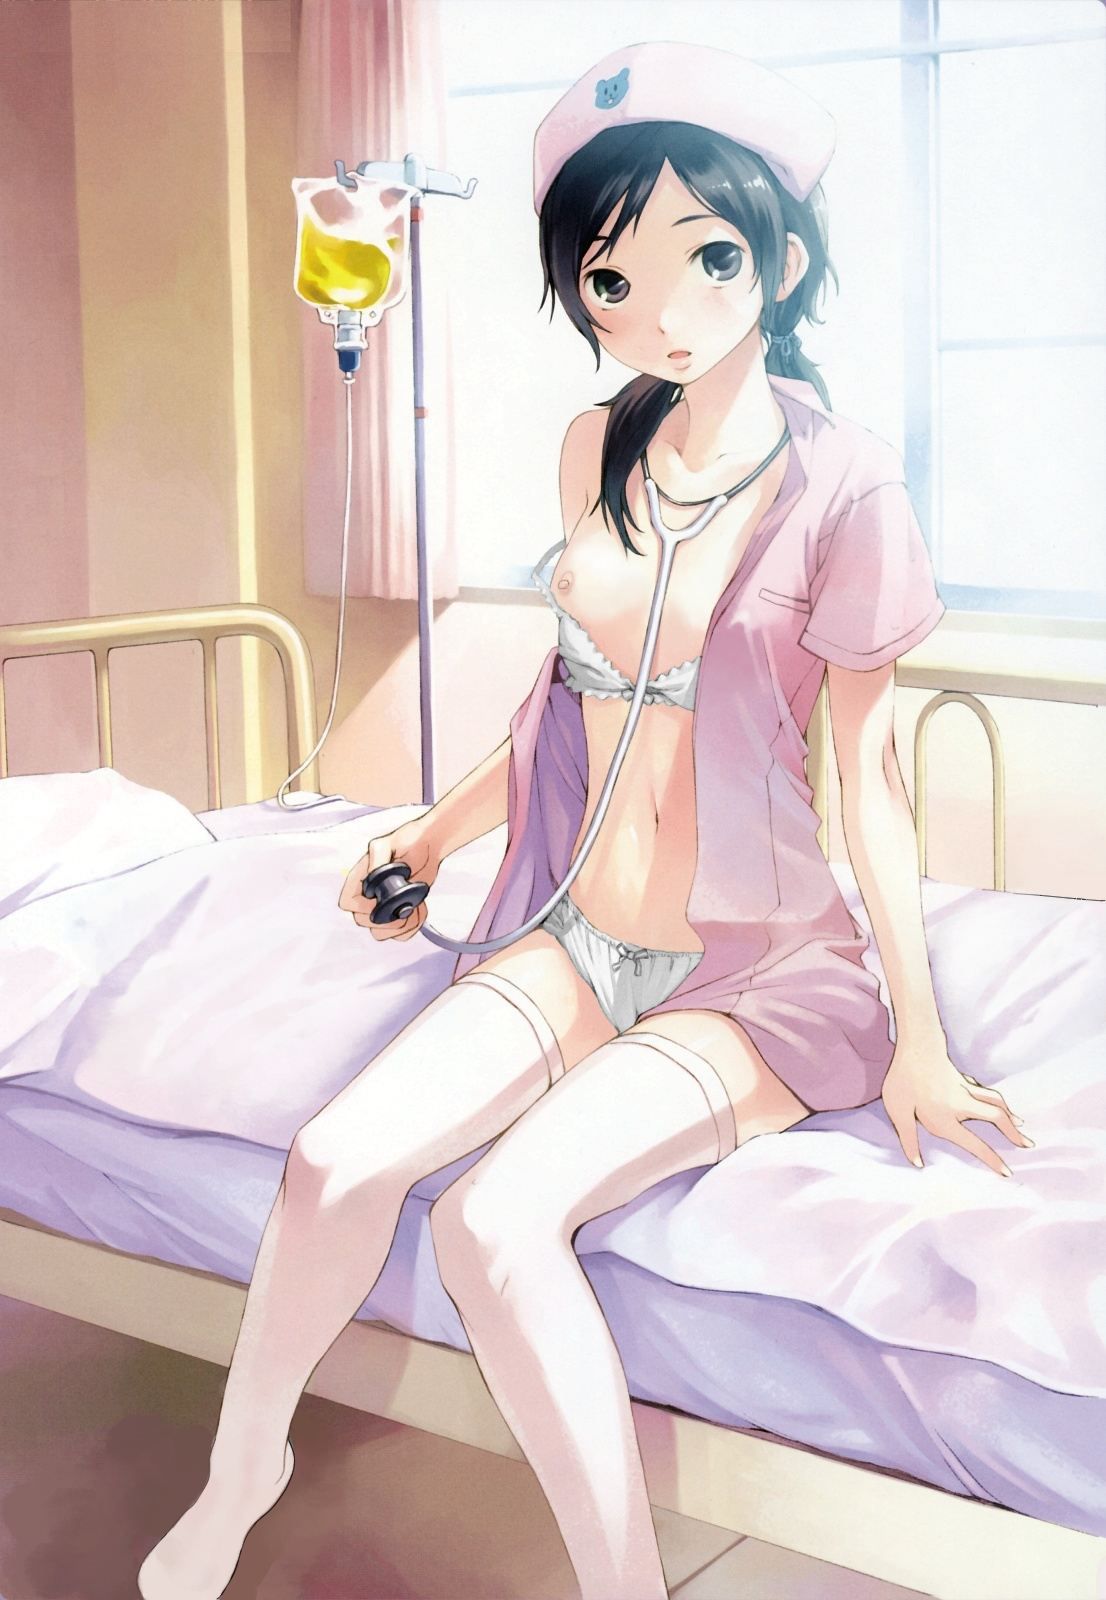 [OP fee 1000 yen: slutty cosplay? Elo not nurse second erotic pictures 28